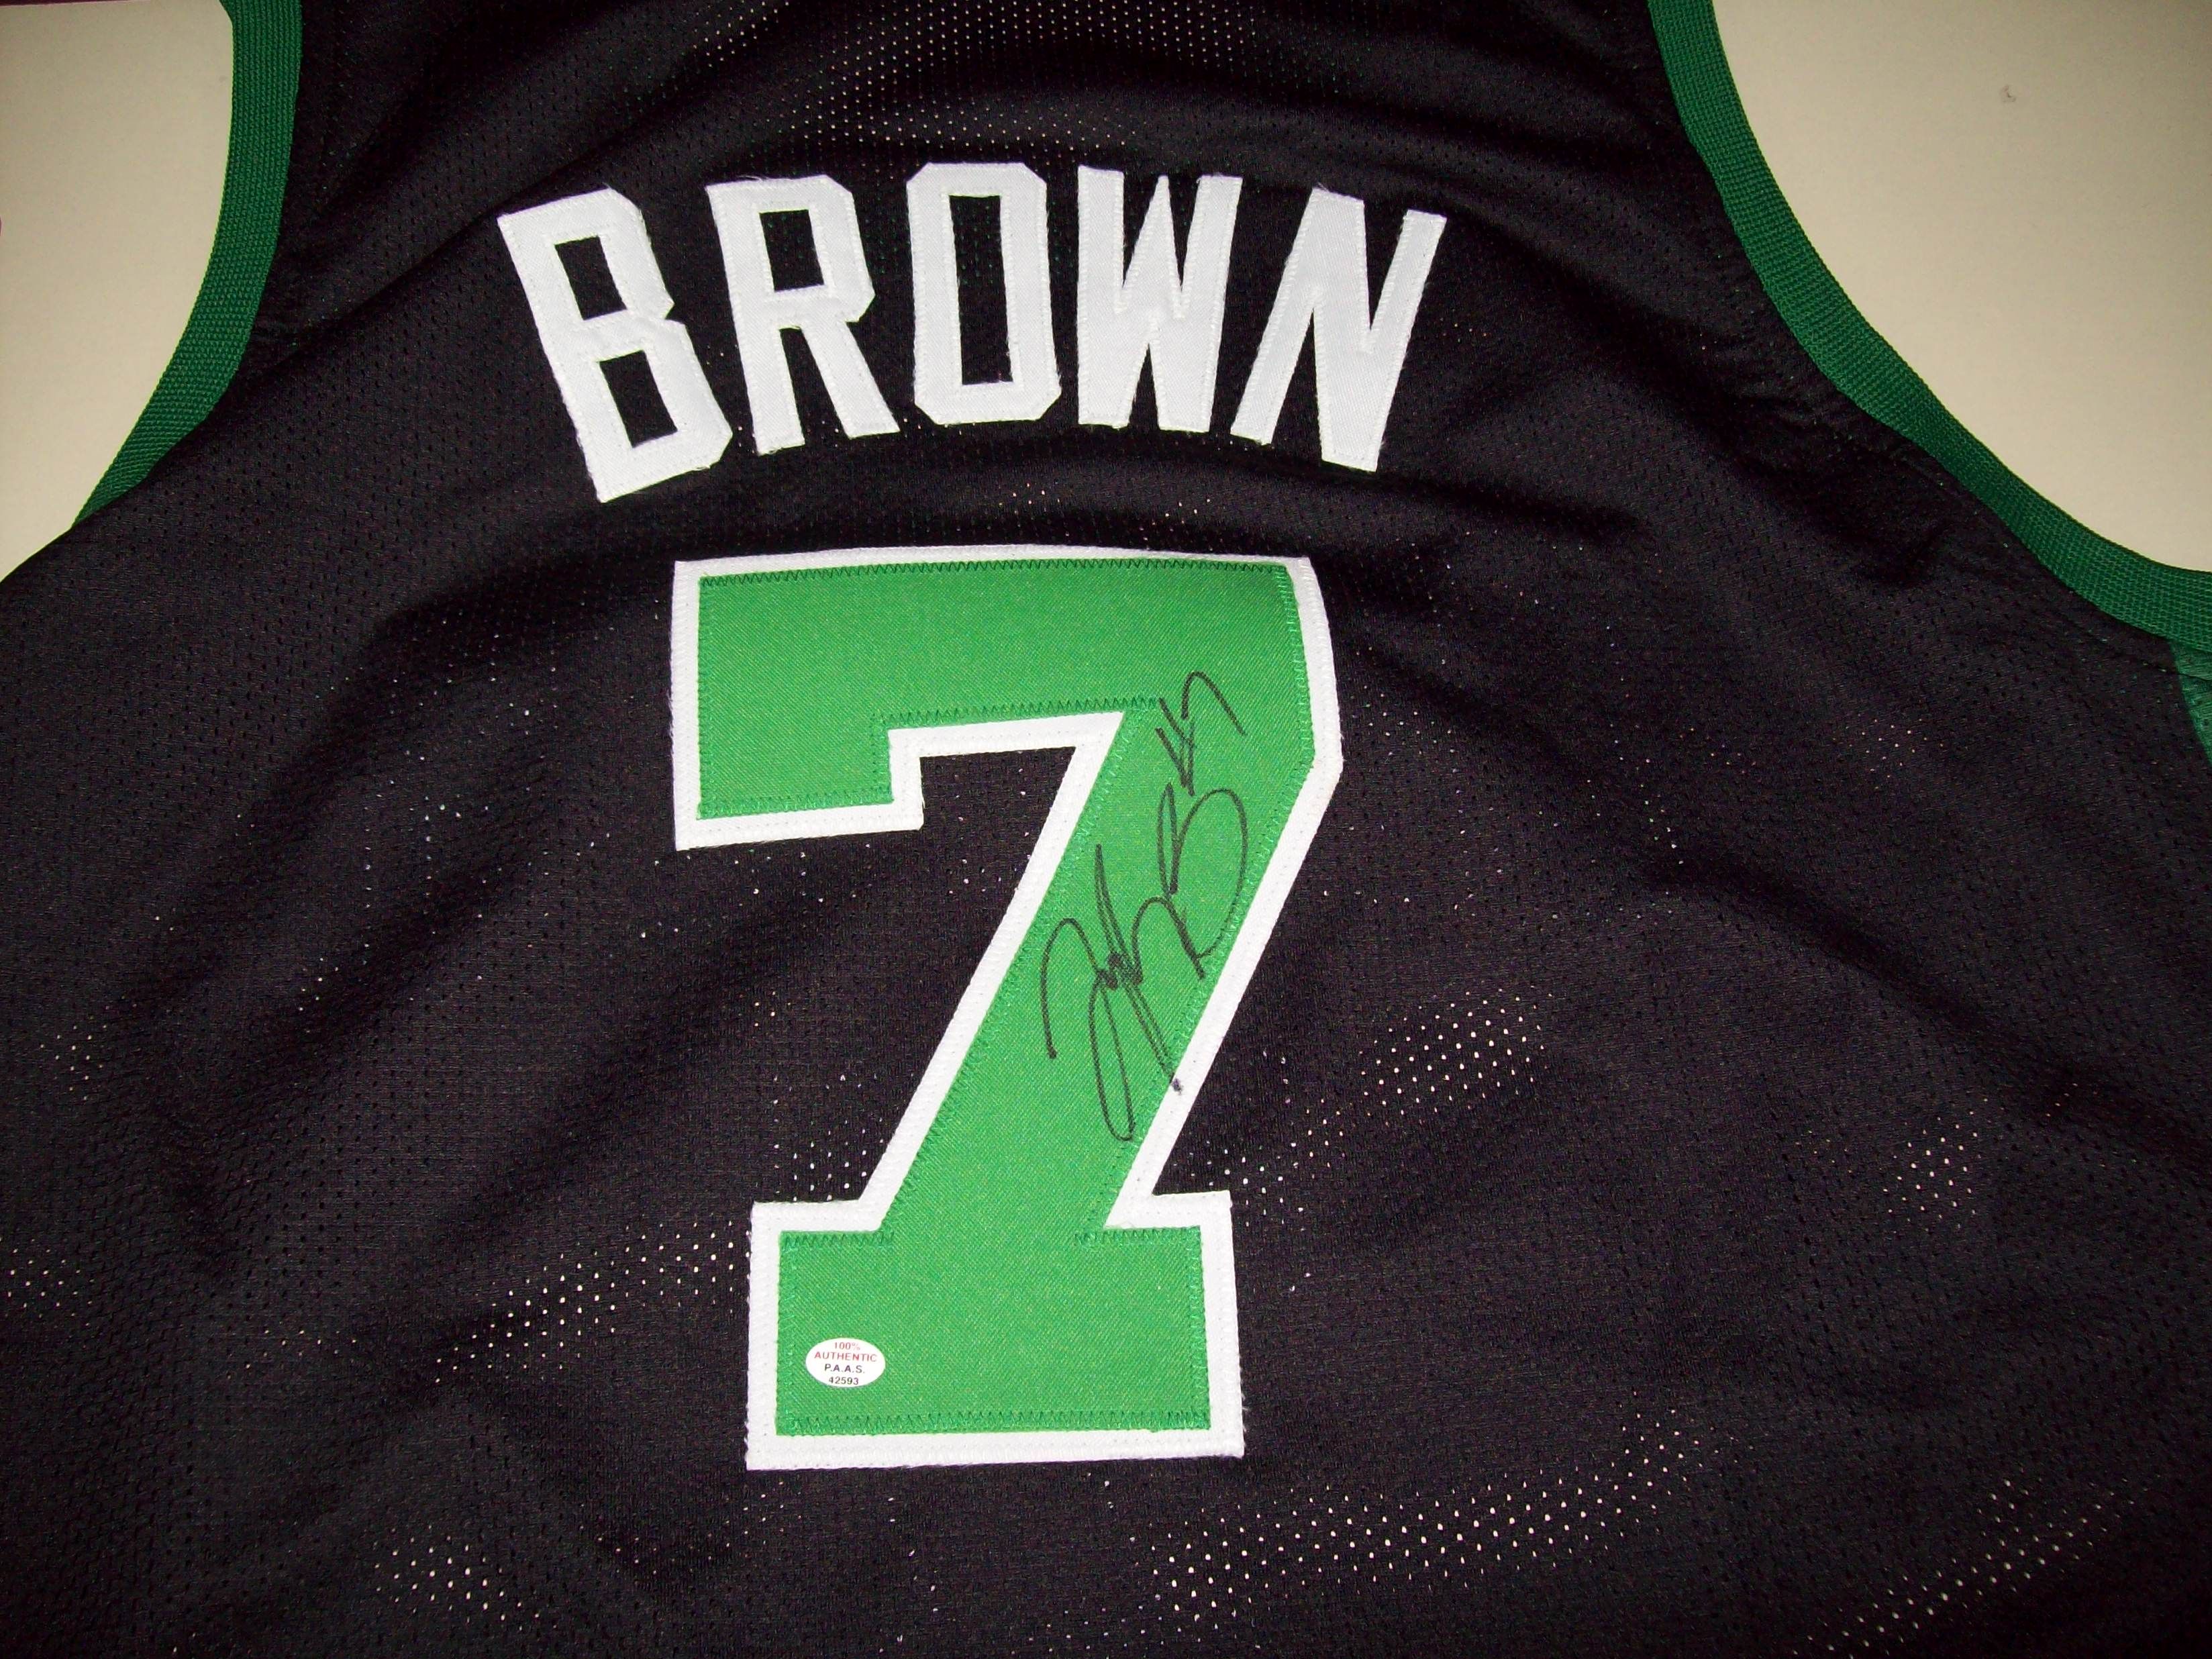 jaylen brown autographed jersey